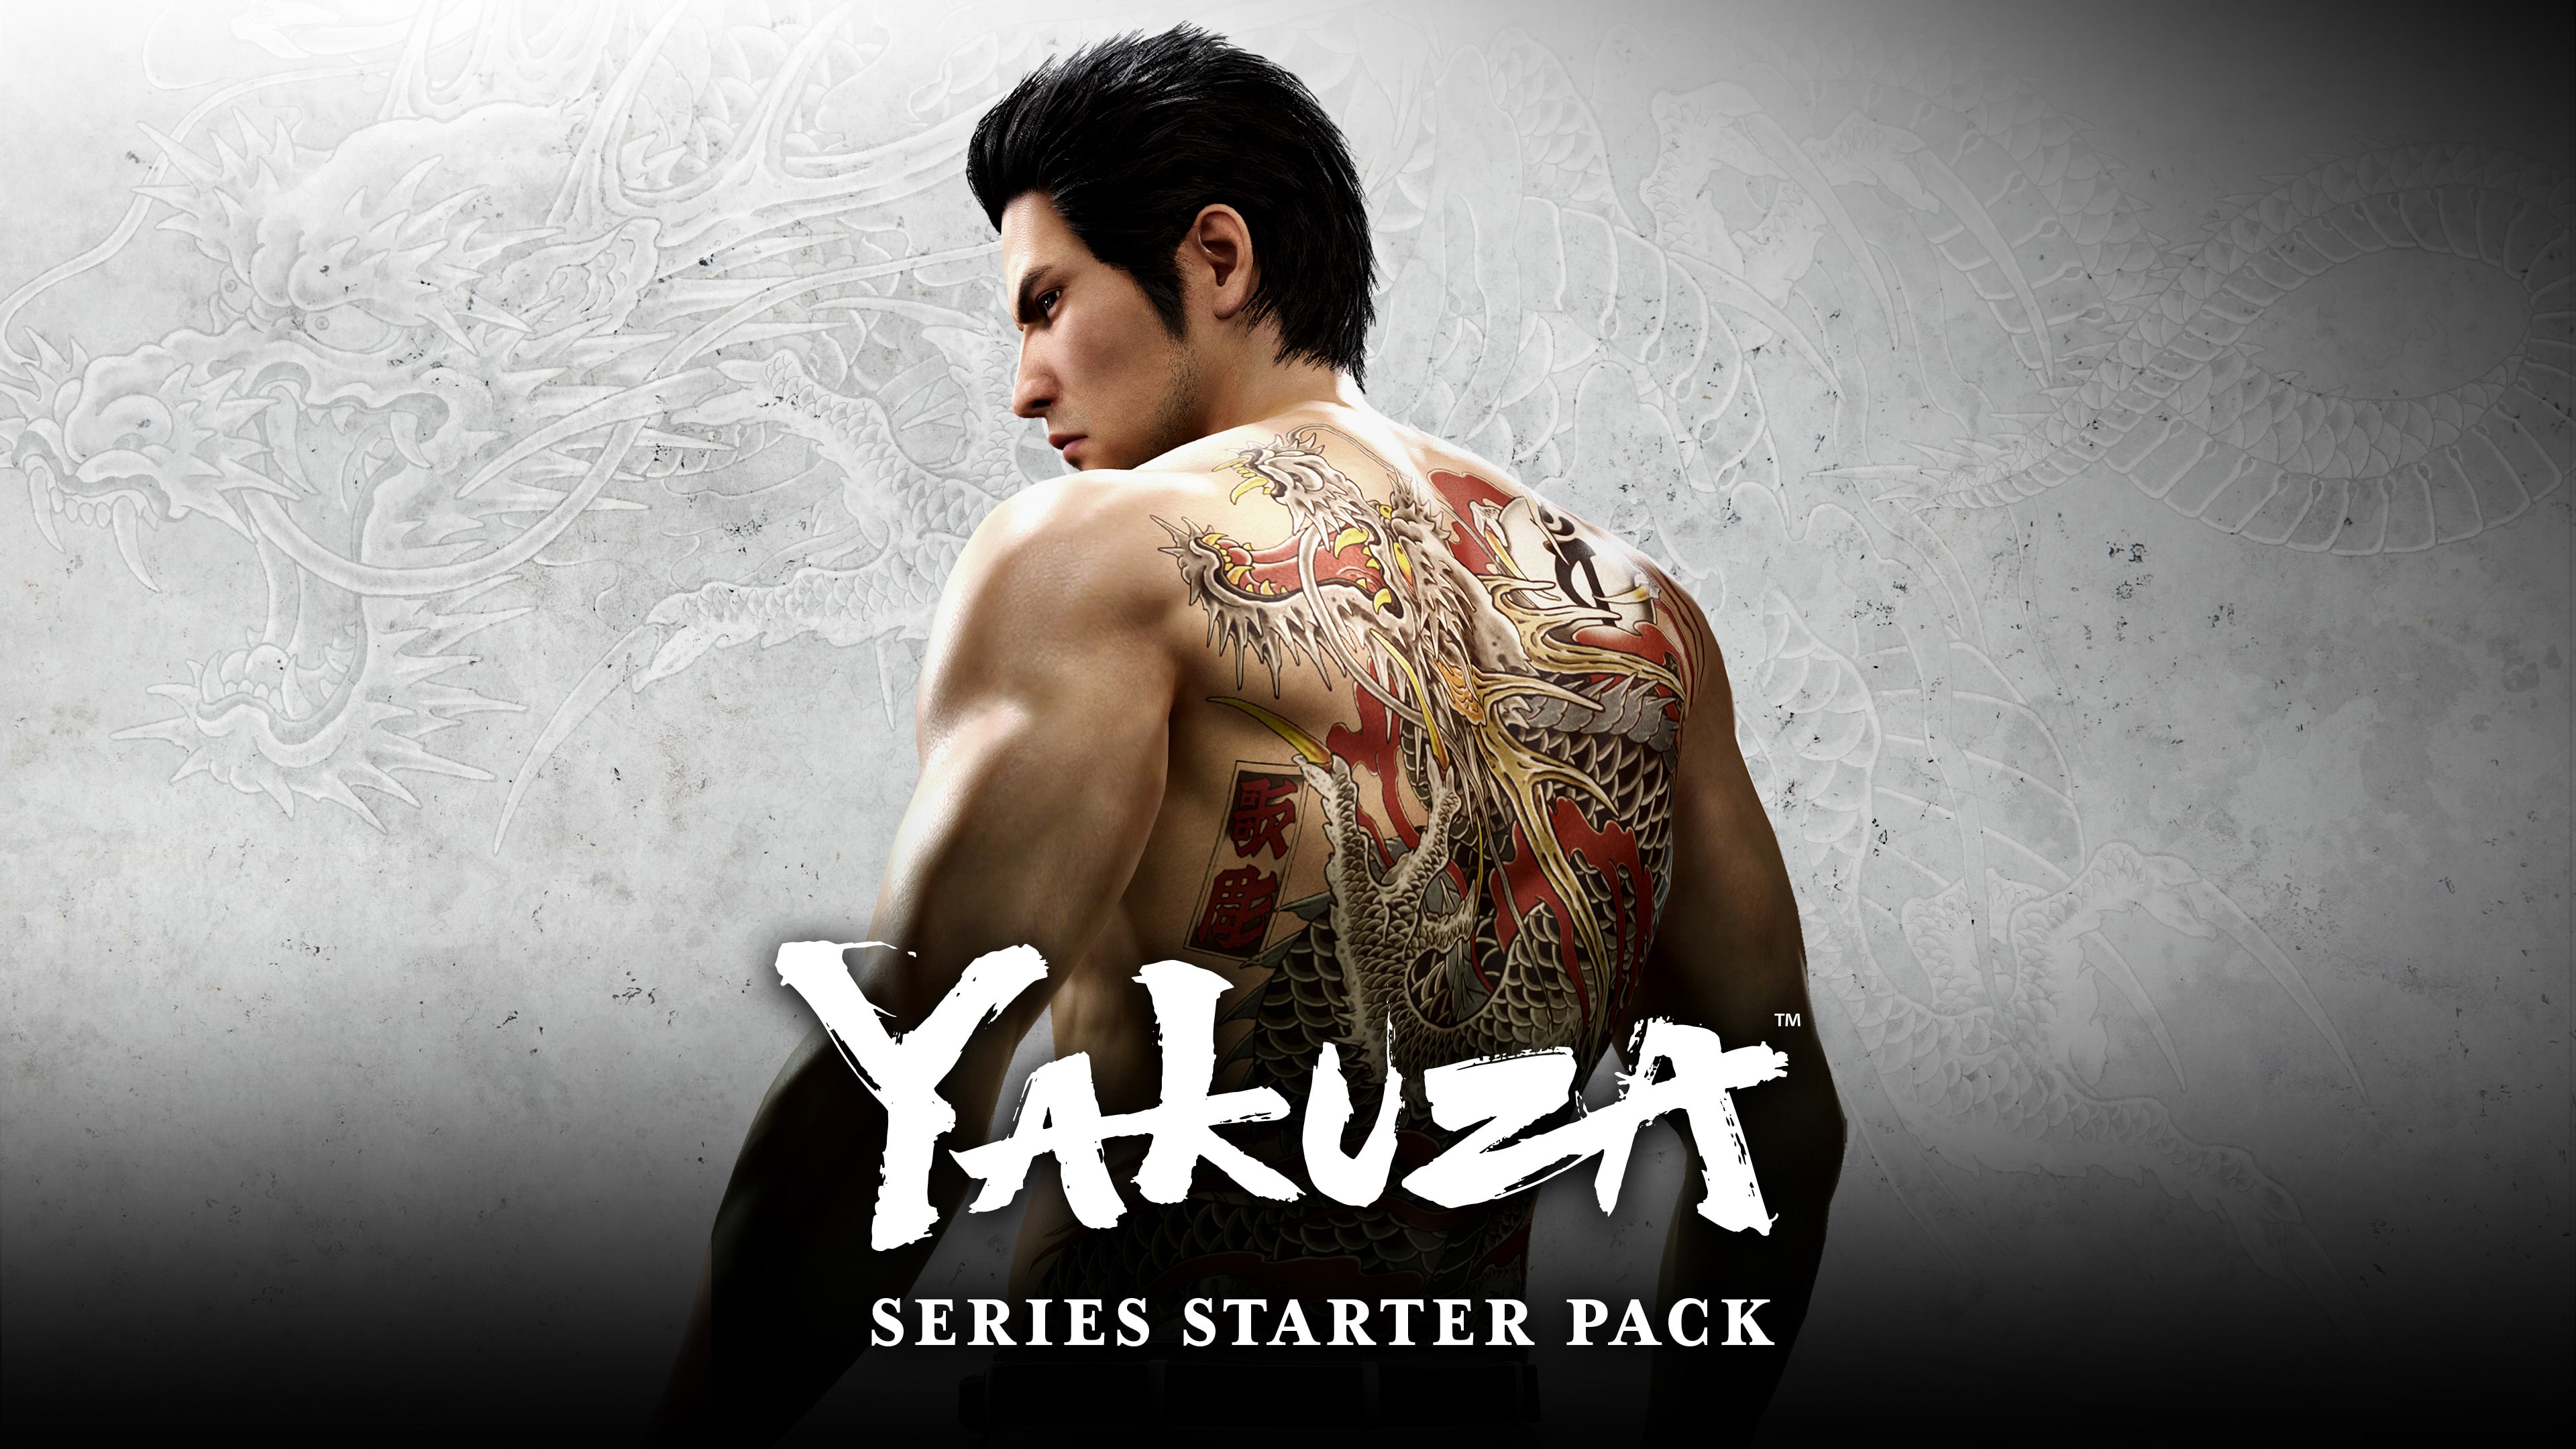 YAKUZA Series Starter Pack